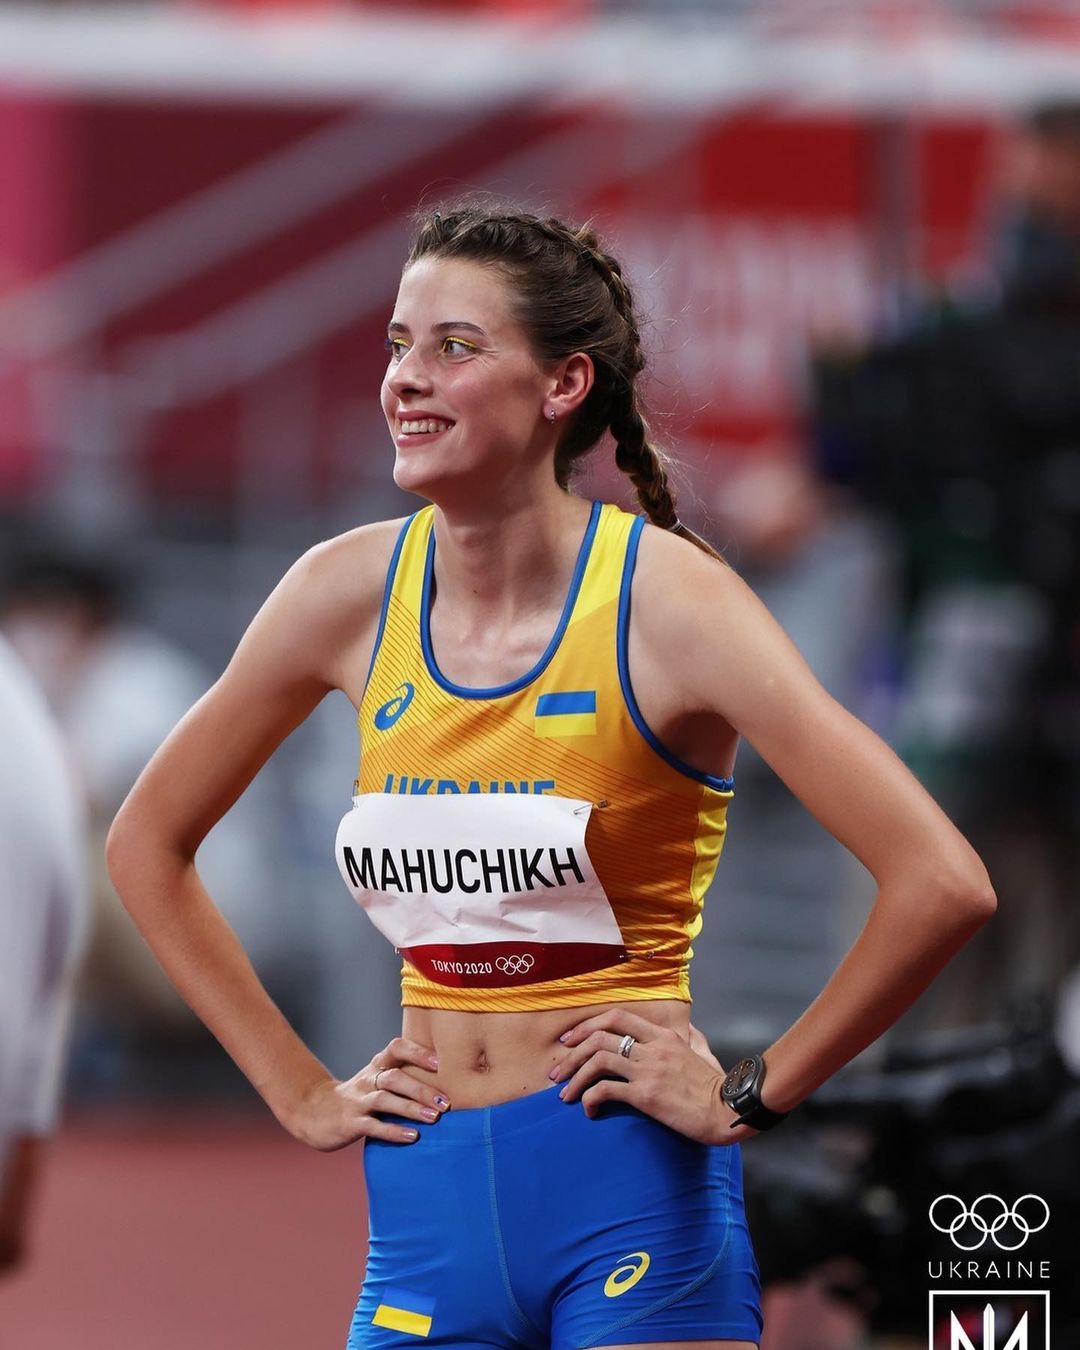 Зірка Олімпіади Магучіх вляпалась у скандал через росіянку. Тепер її викликають "на килим"